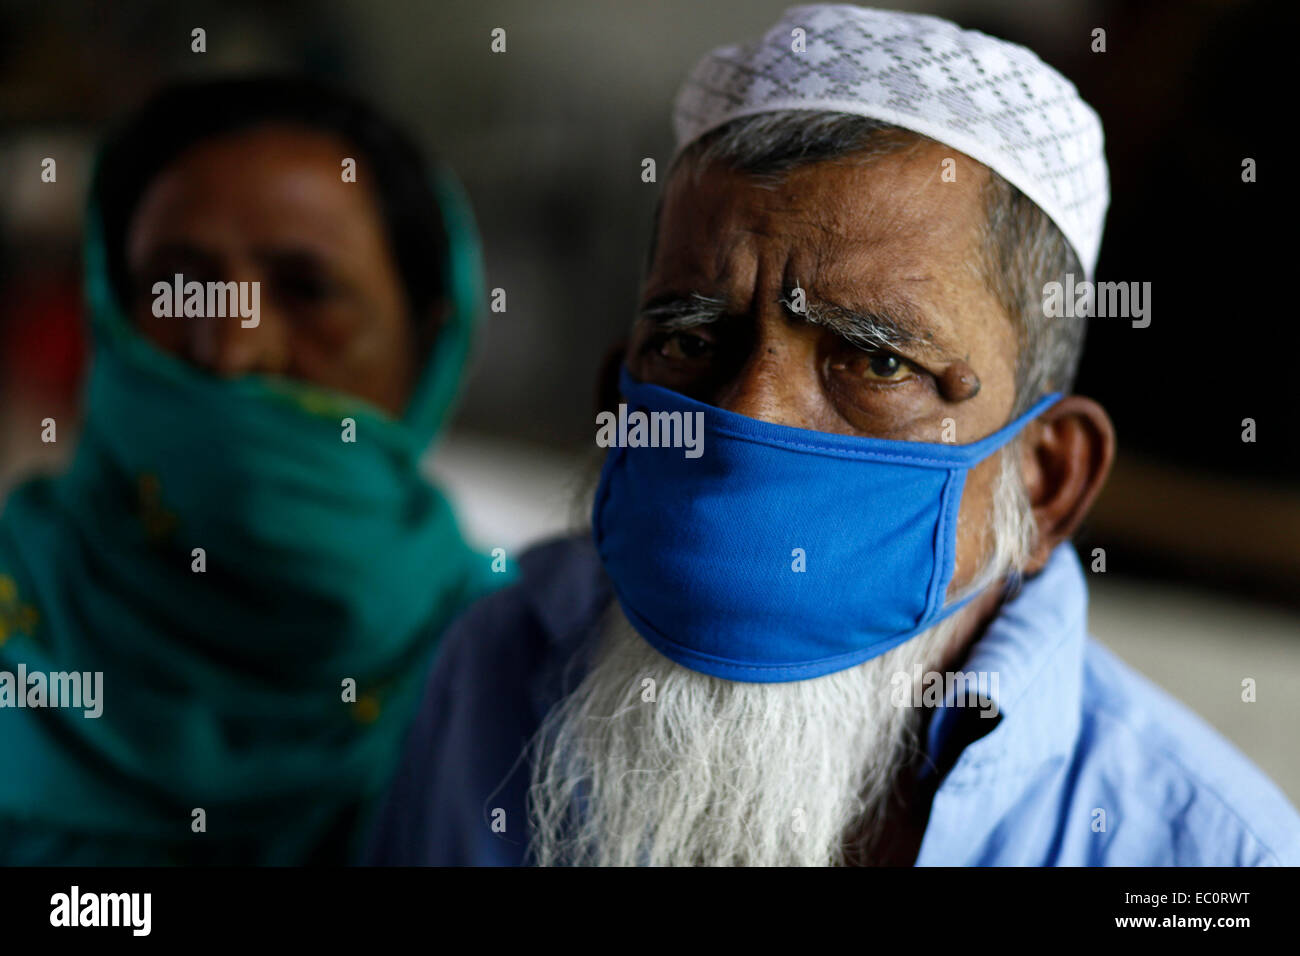 Dhaka, Bangladesch 24. März 2014; Aubl Hashem mit seiner Frau Abul Hashem Alter von 80 Jahren betroffen TB & bekam in TB Krankenhaus, DHaka zugelassen.  Jedes Jahr 9 Millionen Menschen Gt krank mit TB. Welt-Tuberkulose-Tag bietet die Möglichkeit zur Sensibilisierung über TB-Probleme und Lösungen und weltweit Tuberkulosebekämpfung Bemühungen unterstützen. Während große Fortschritte gemacht haben, zu kontrollieren und TB zu heilen, bekommen Menschen noch krank und sterben an dieser Krankheit in unserem Land. Es muss noch viel mehr getan werden, um diese Krankheit zu beseitigen. Stockfoto